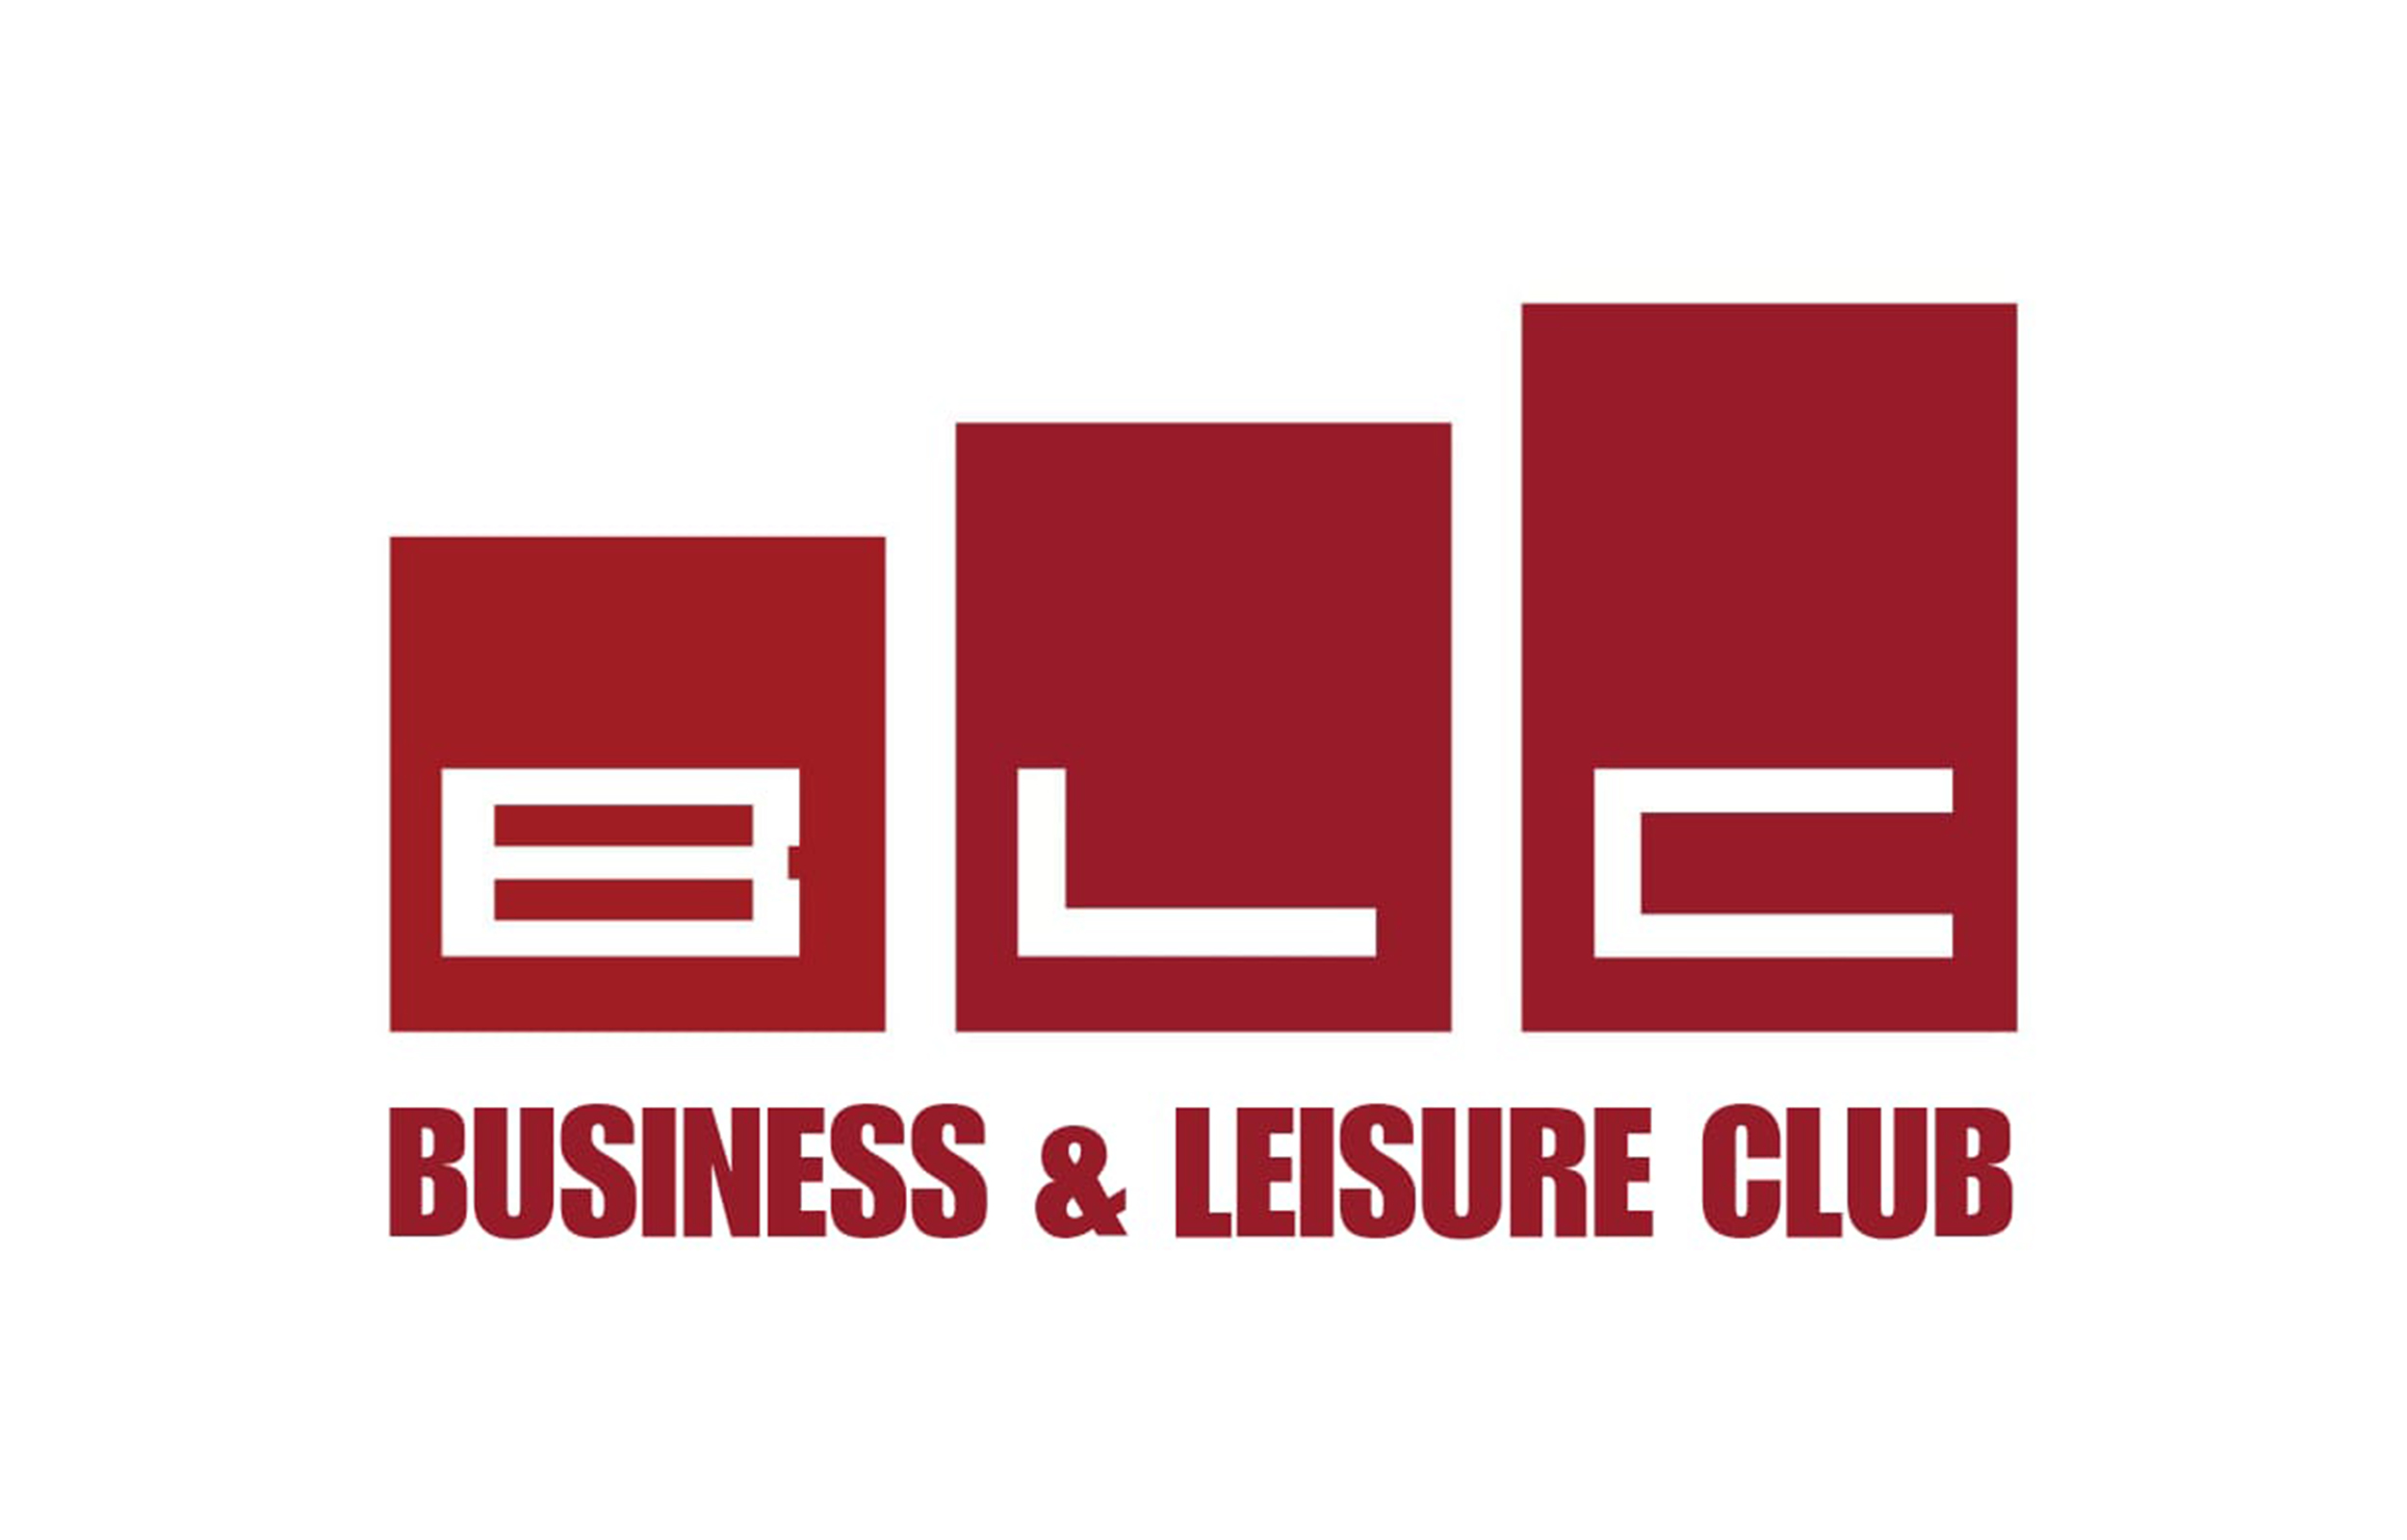 BLC-Logo